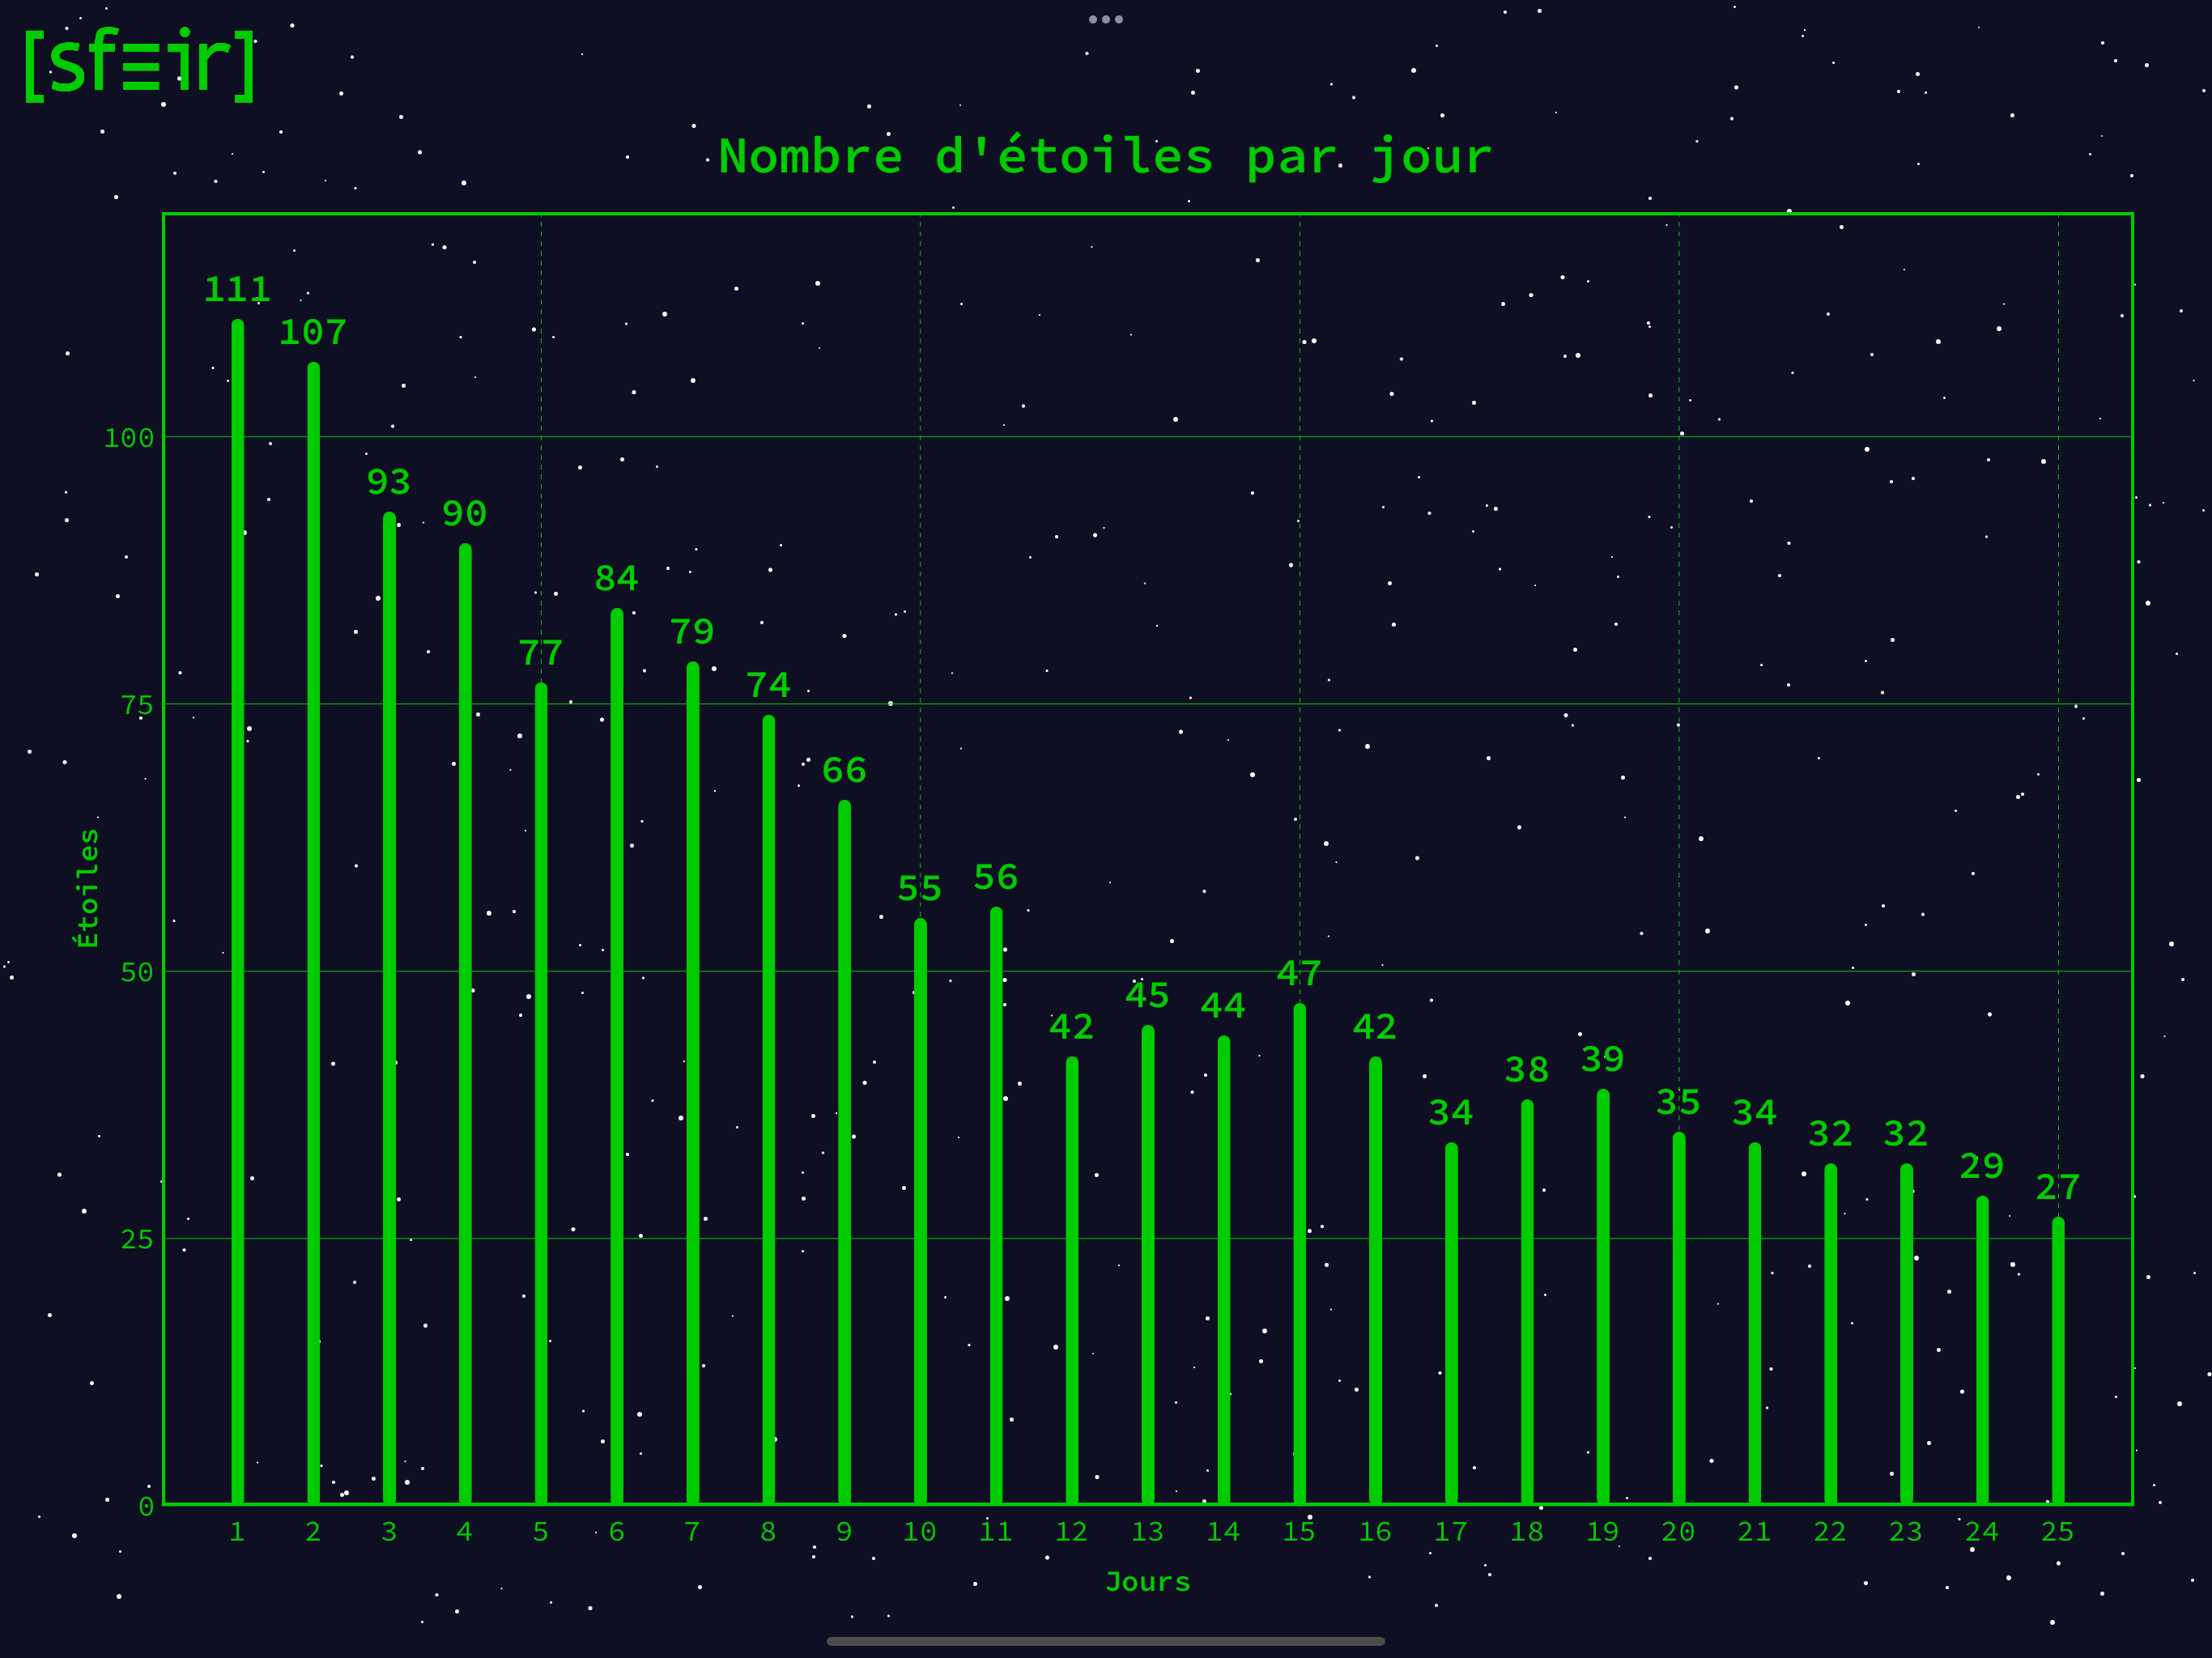 Graphe représentant le nombre d'étoiles obtenues chaque jour au total